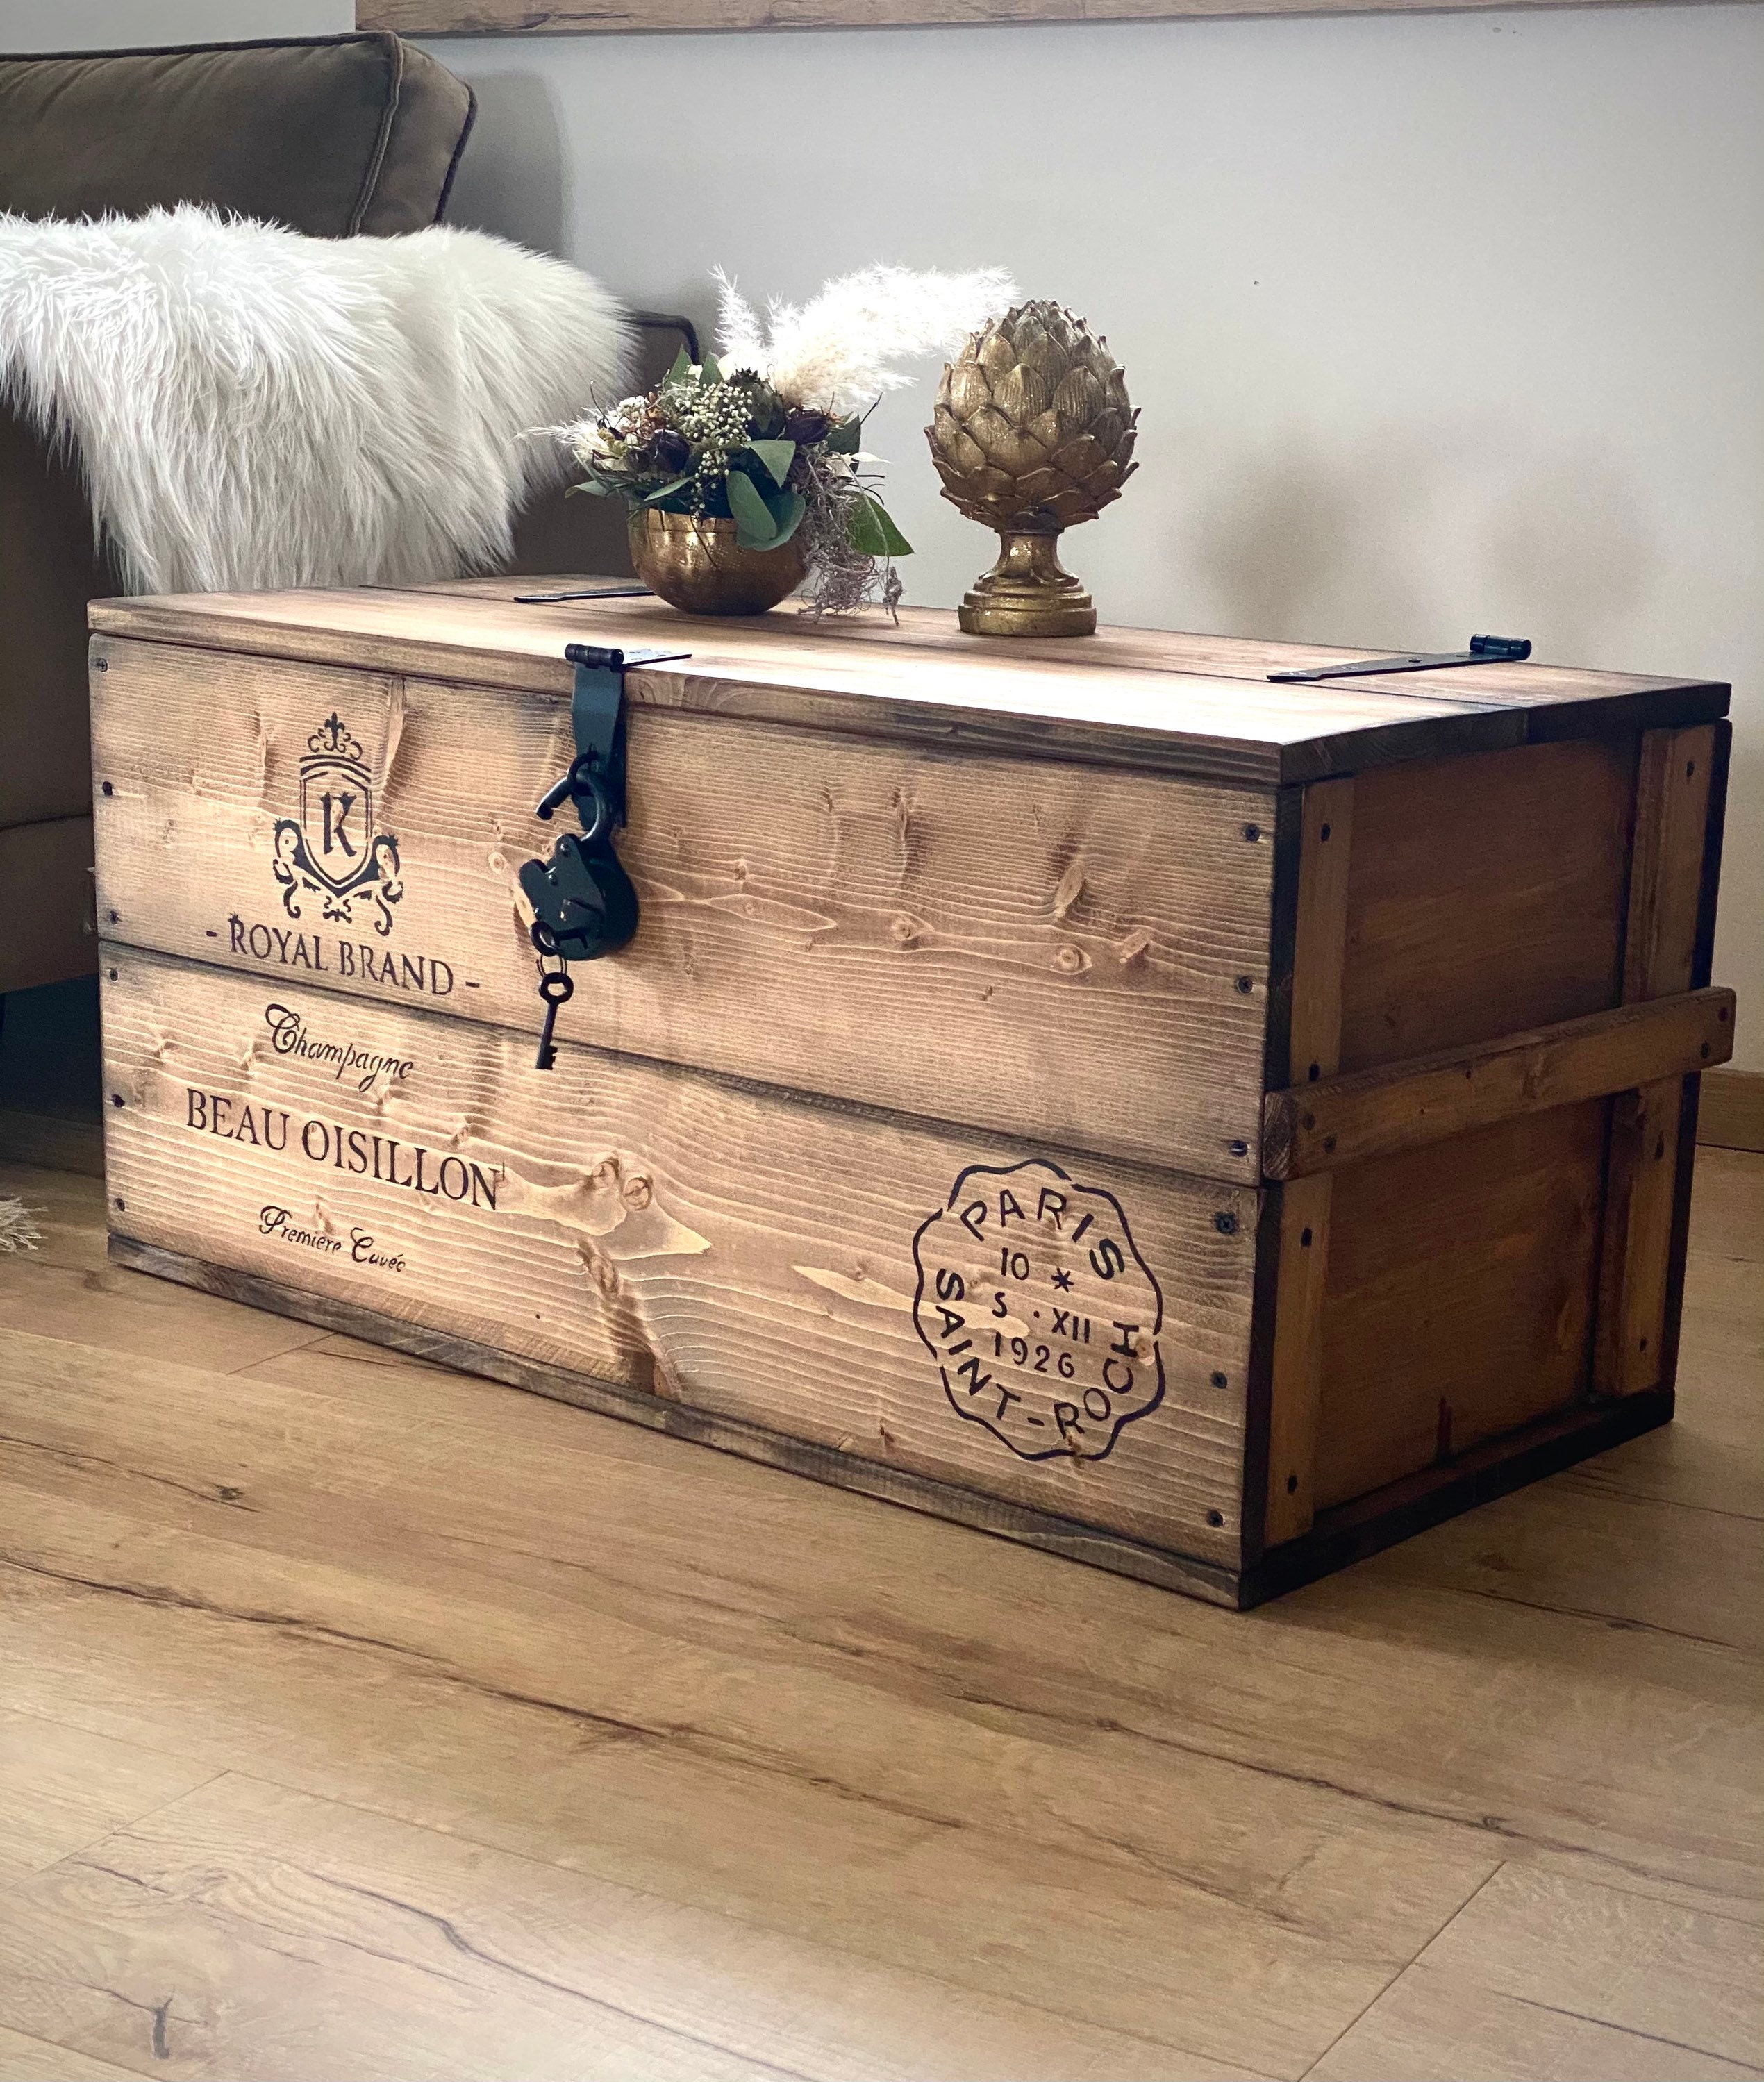 Kist wijnkist houten kist vrachtkist bankje salontafel - België